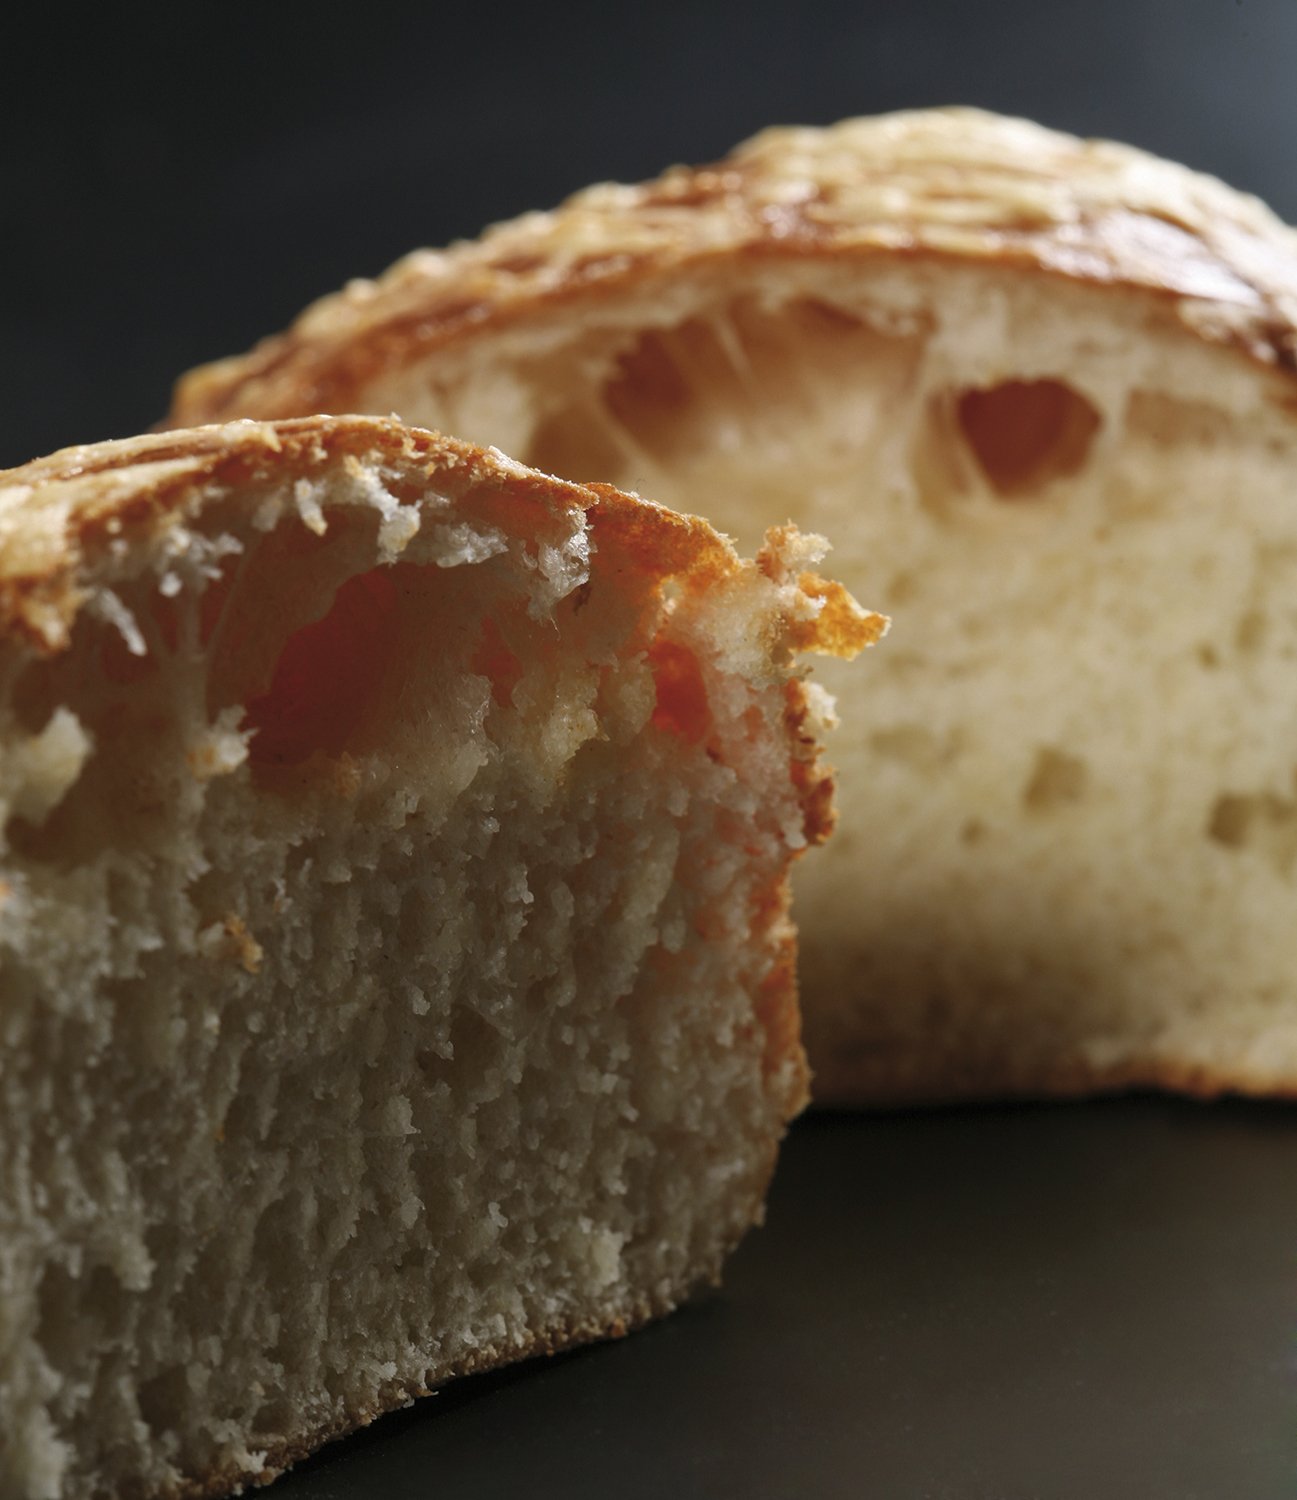 True Bread - Panes Con Oficio, 2nd Edition (Joaquin Llaras)